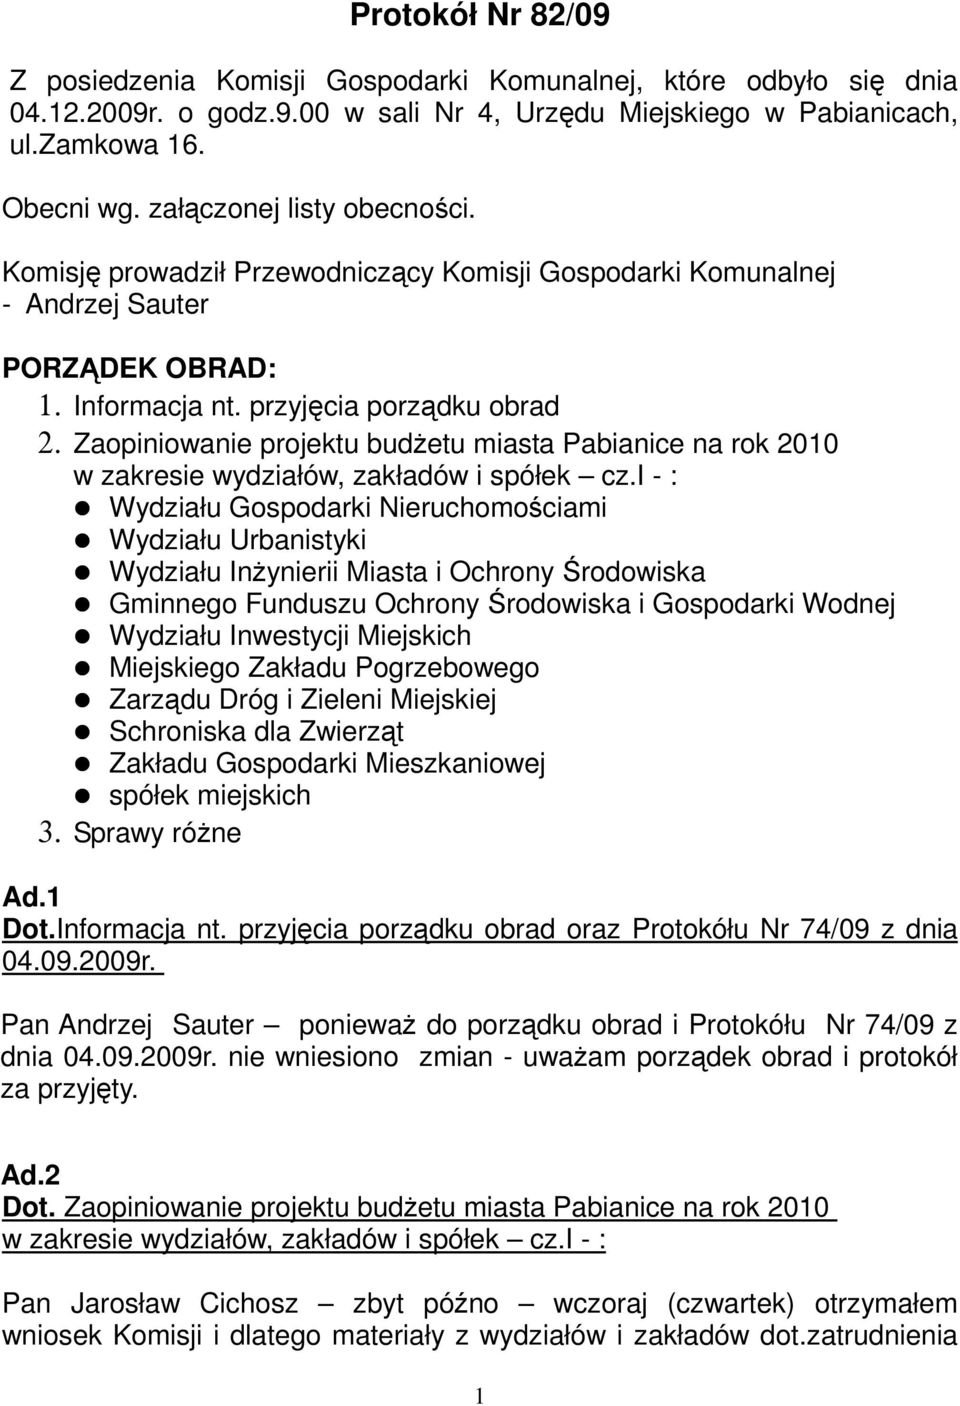 Zaopiniowanie projektu budŝetu miasta Pabianice na rok 2010 w zakresie wydziałów, zakładów i spółek cz.